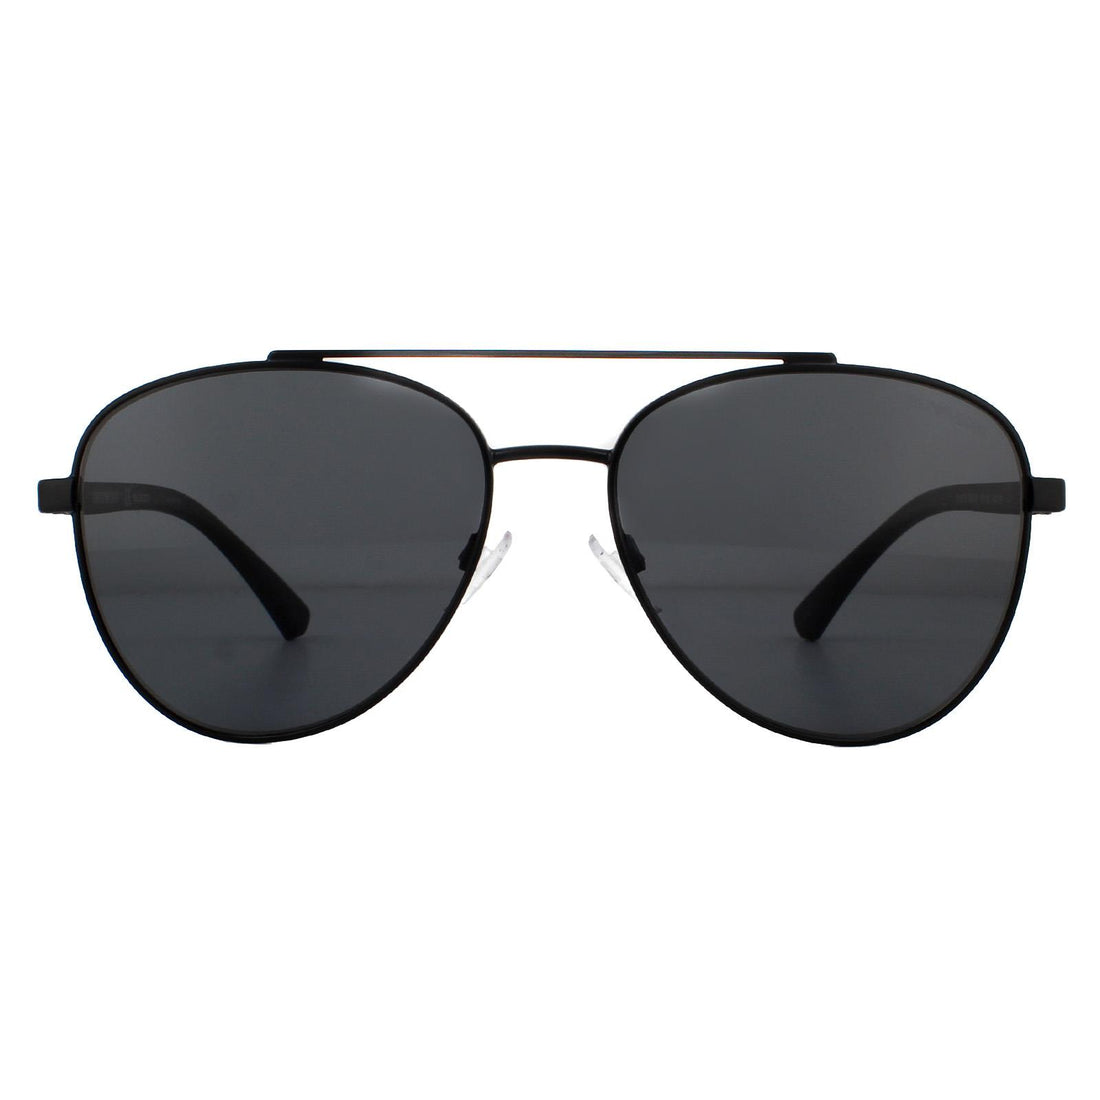 Emporio Armani EA2079 Sunglasses Matte Black / Grey Polarized